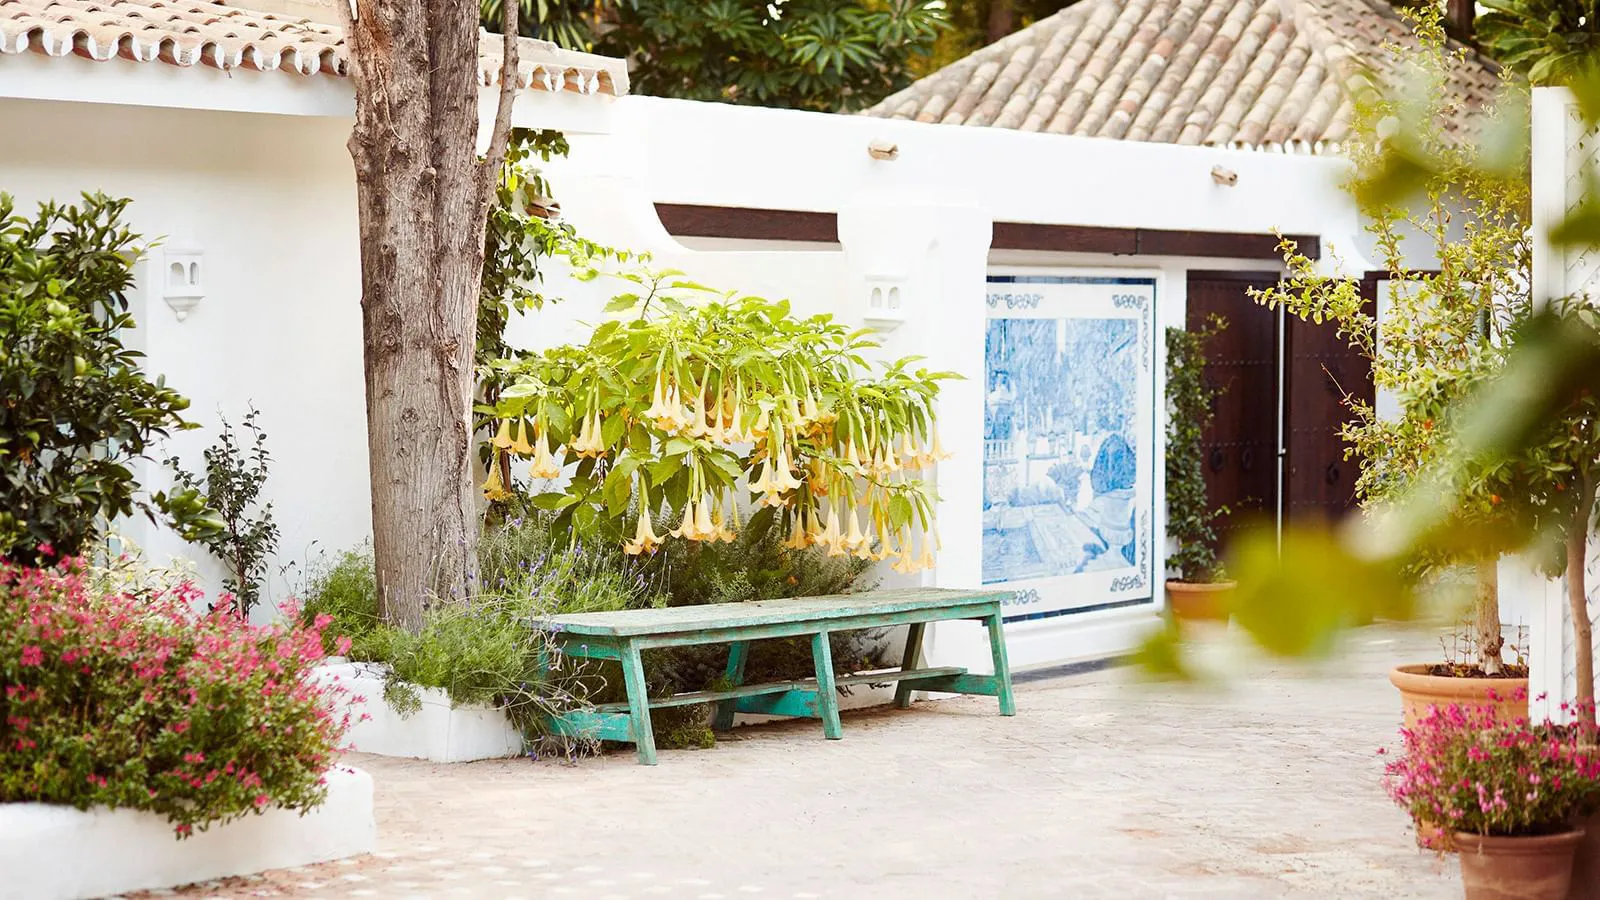 Villa Rincon Del Mar, Marbella, Spain Luxury Vacations, Casol